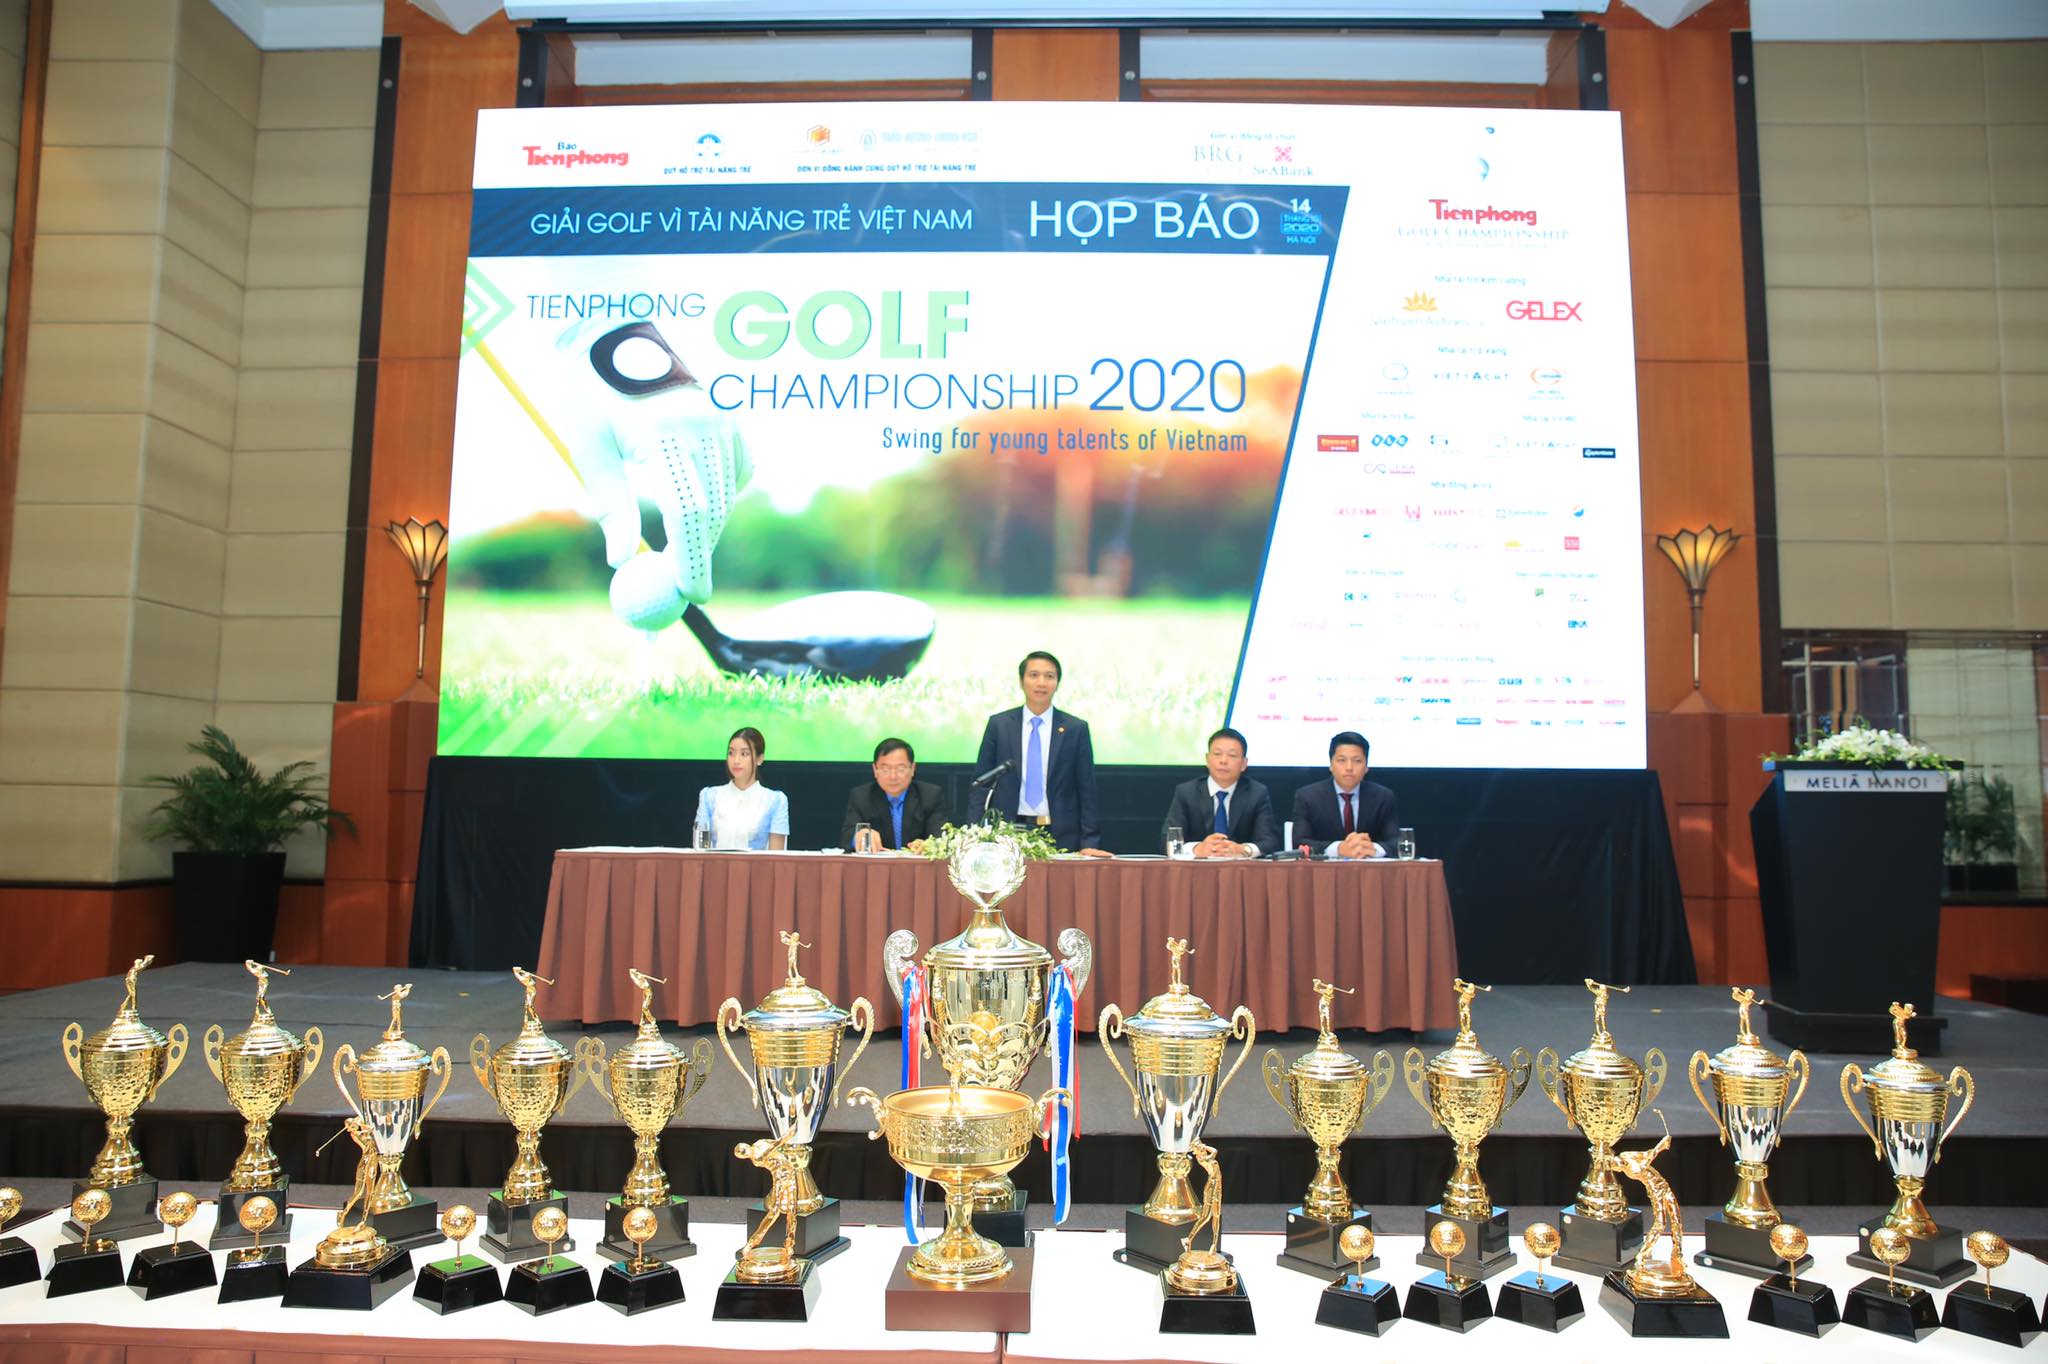 Giải golf vì tài năng Trẻ em Việt Nam năm 2020 chuẩn bị khởi tranh